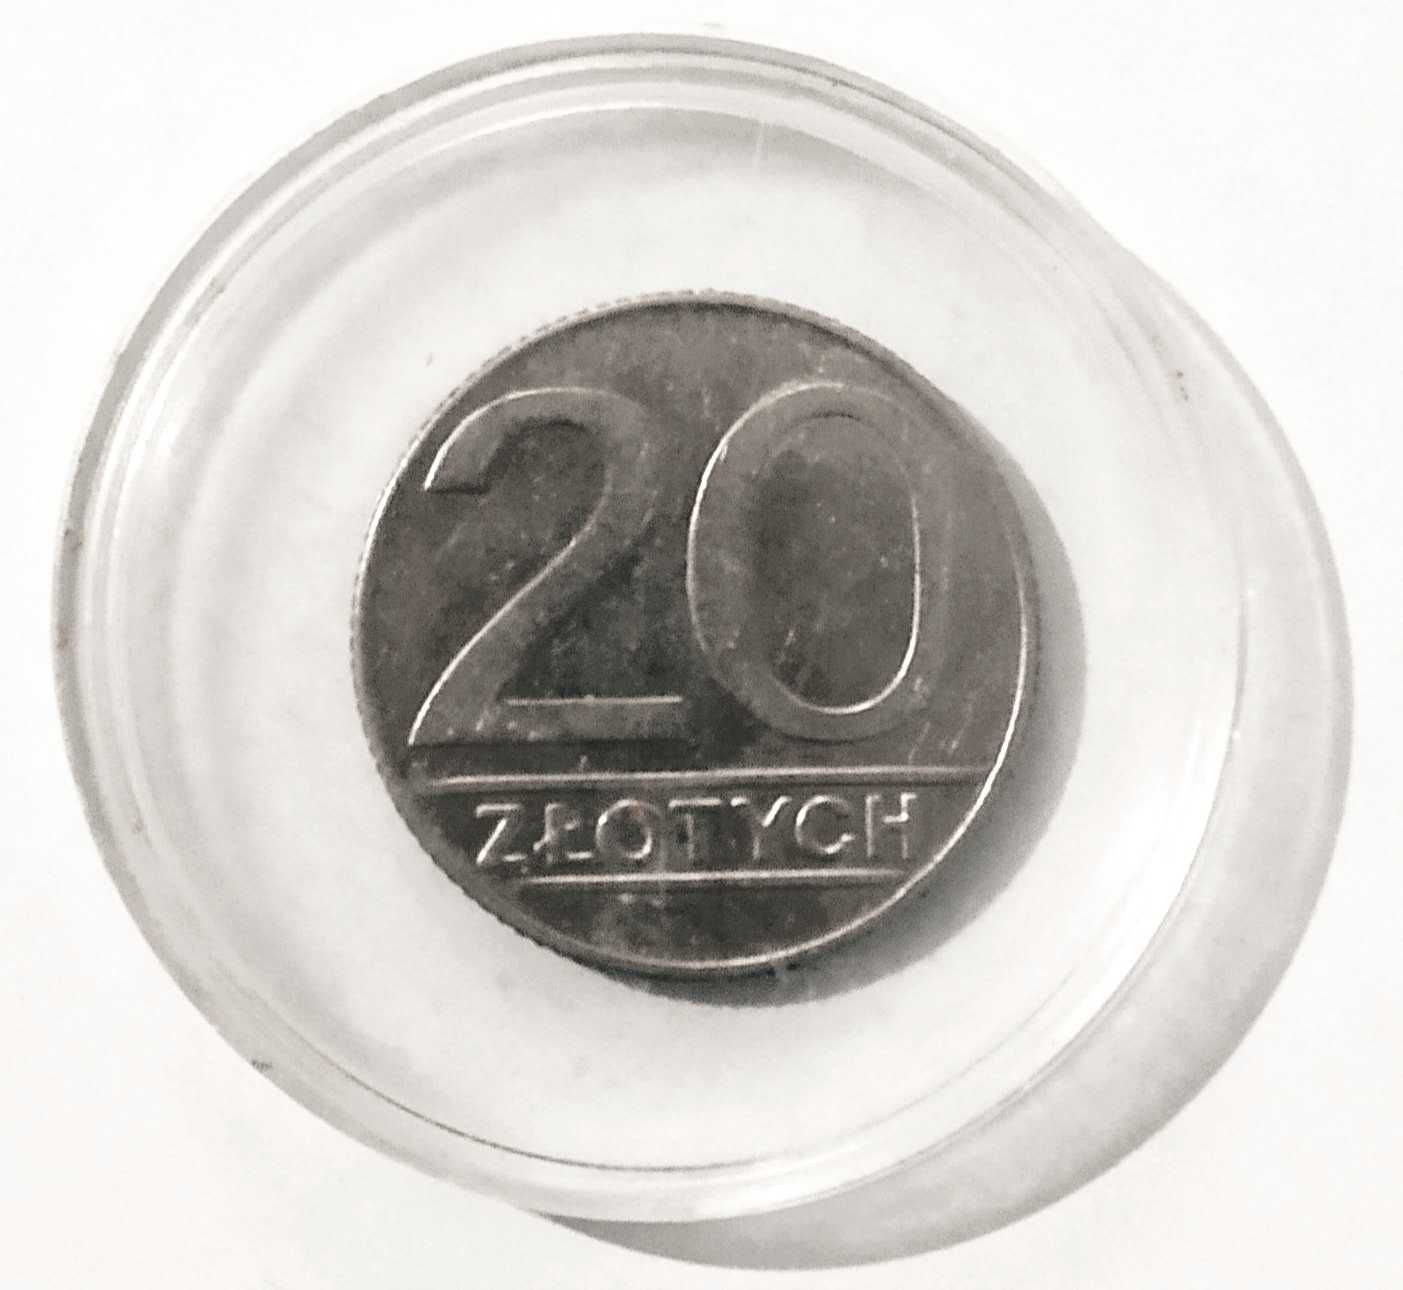 Moneta kolekcjonerska unikatowa 20 zl z 1989 roku